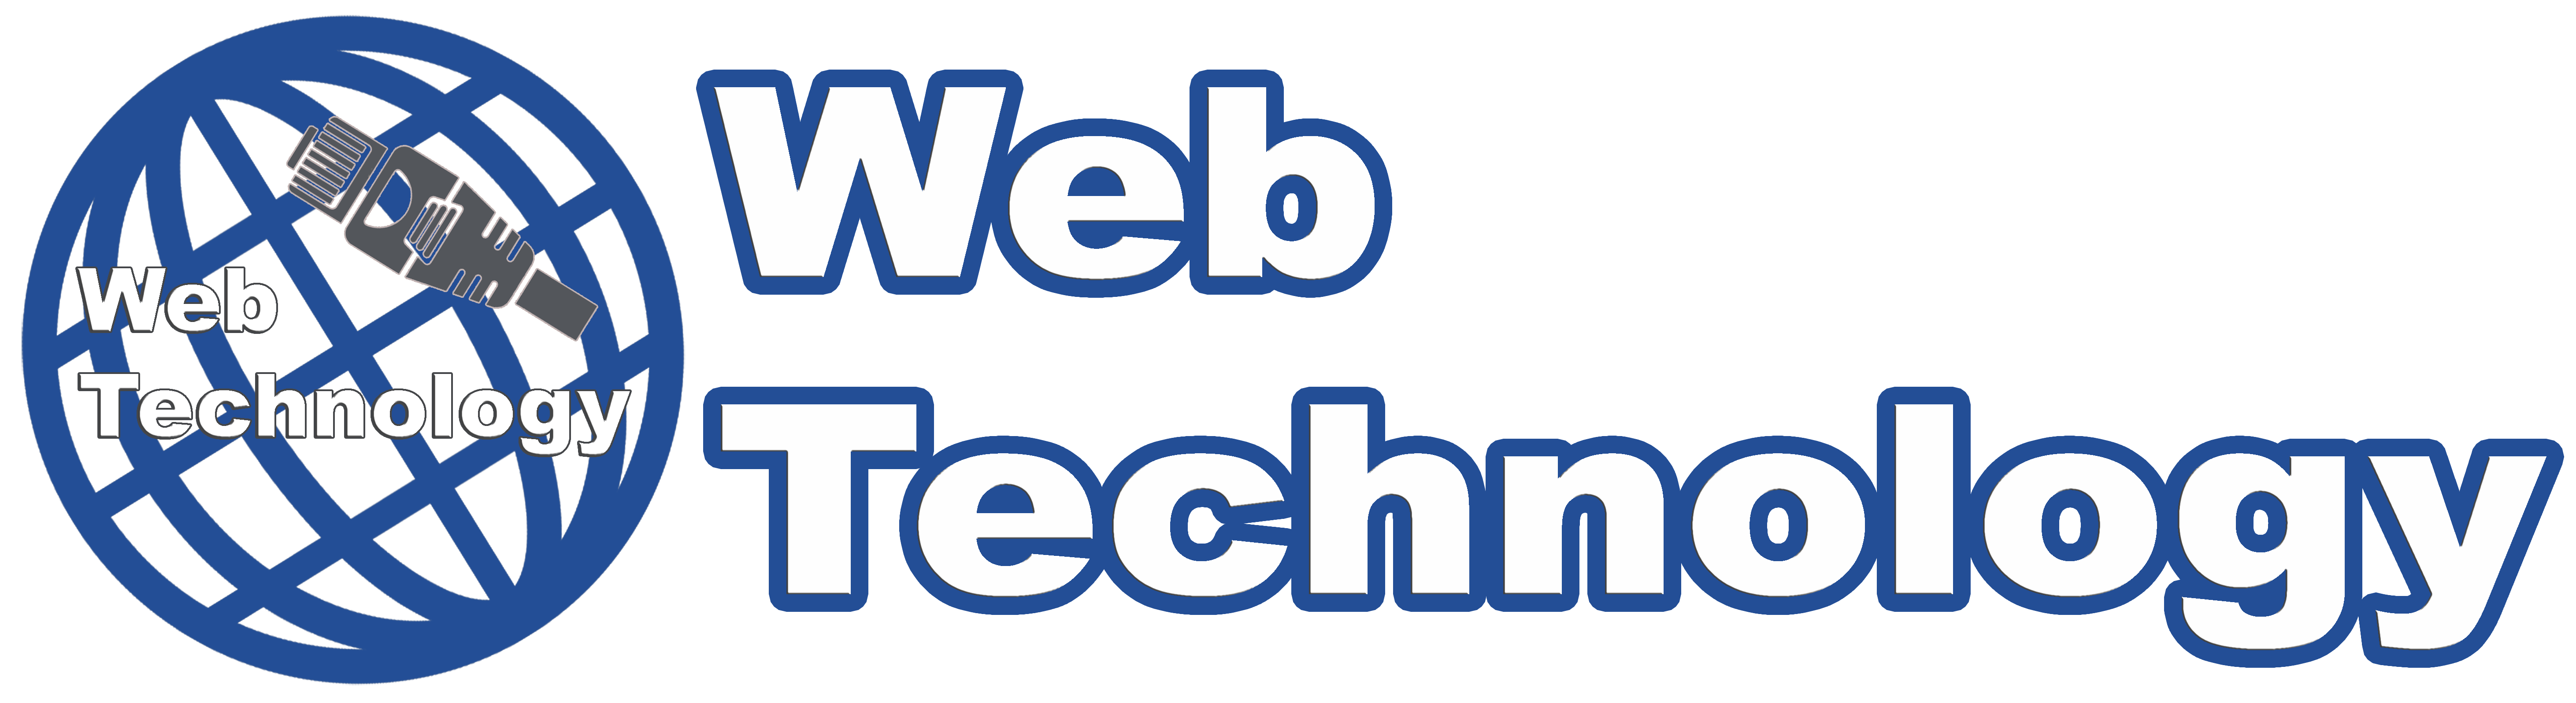 WebTechnology